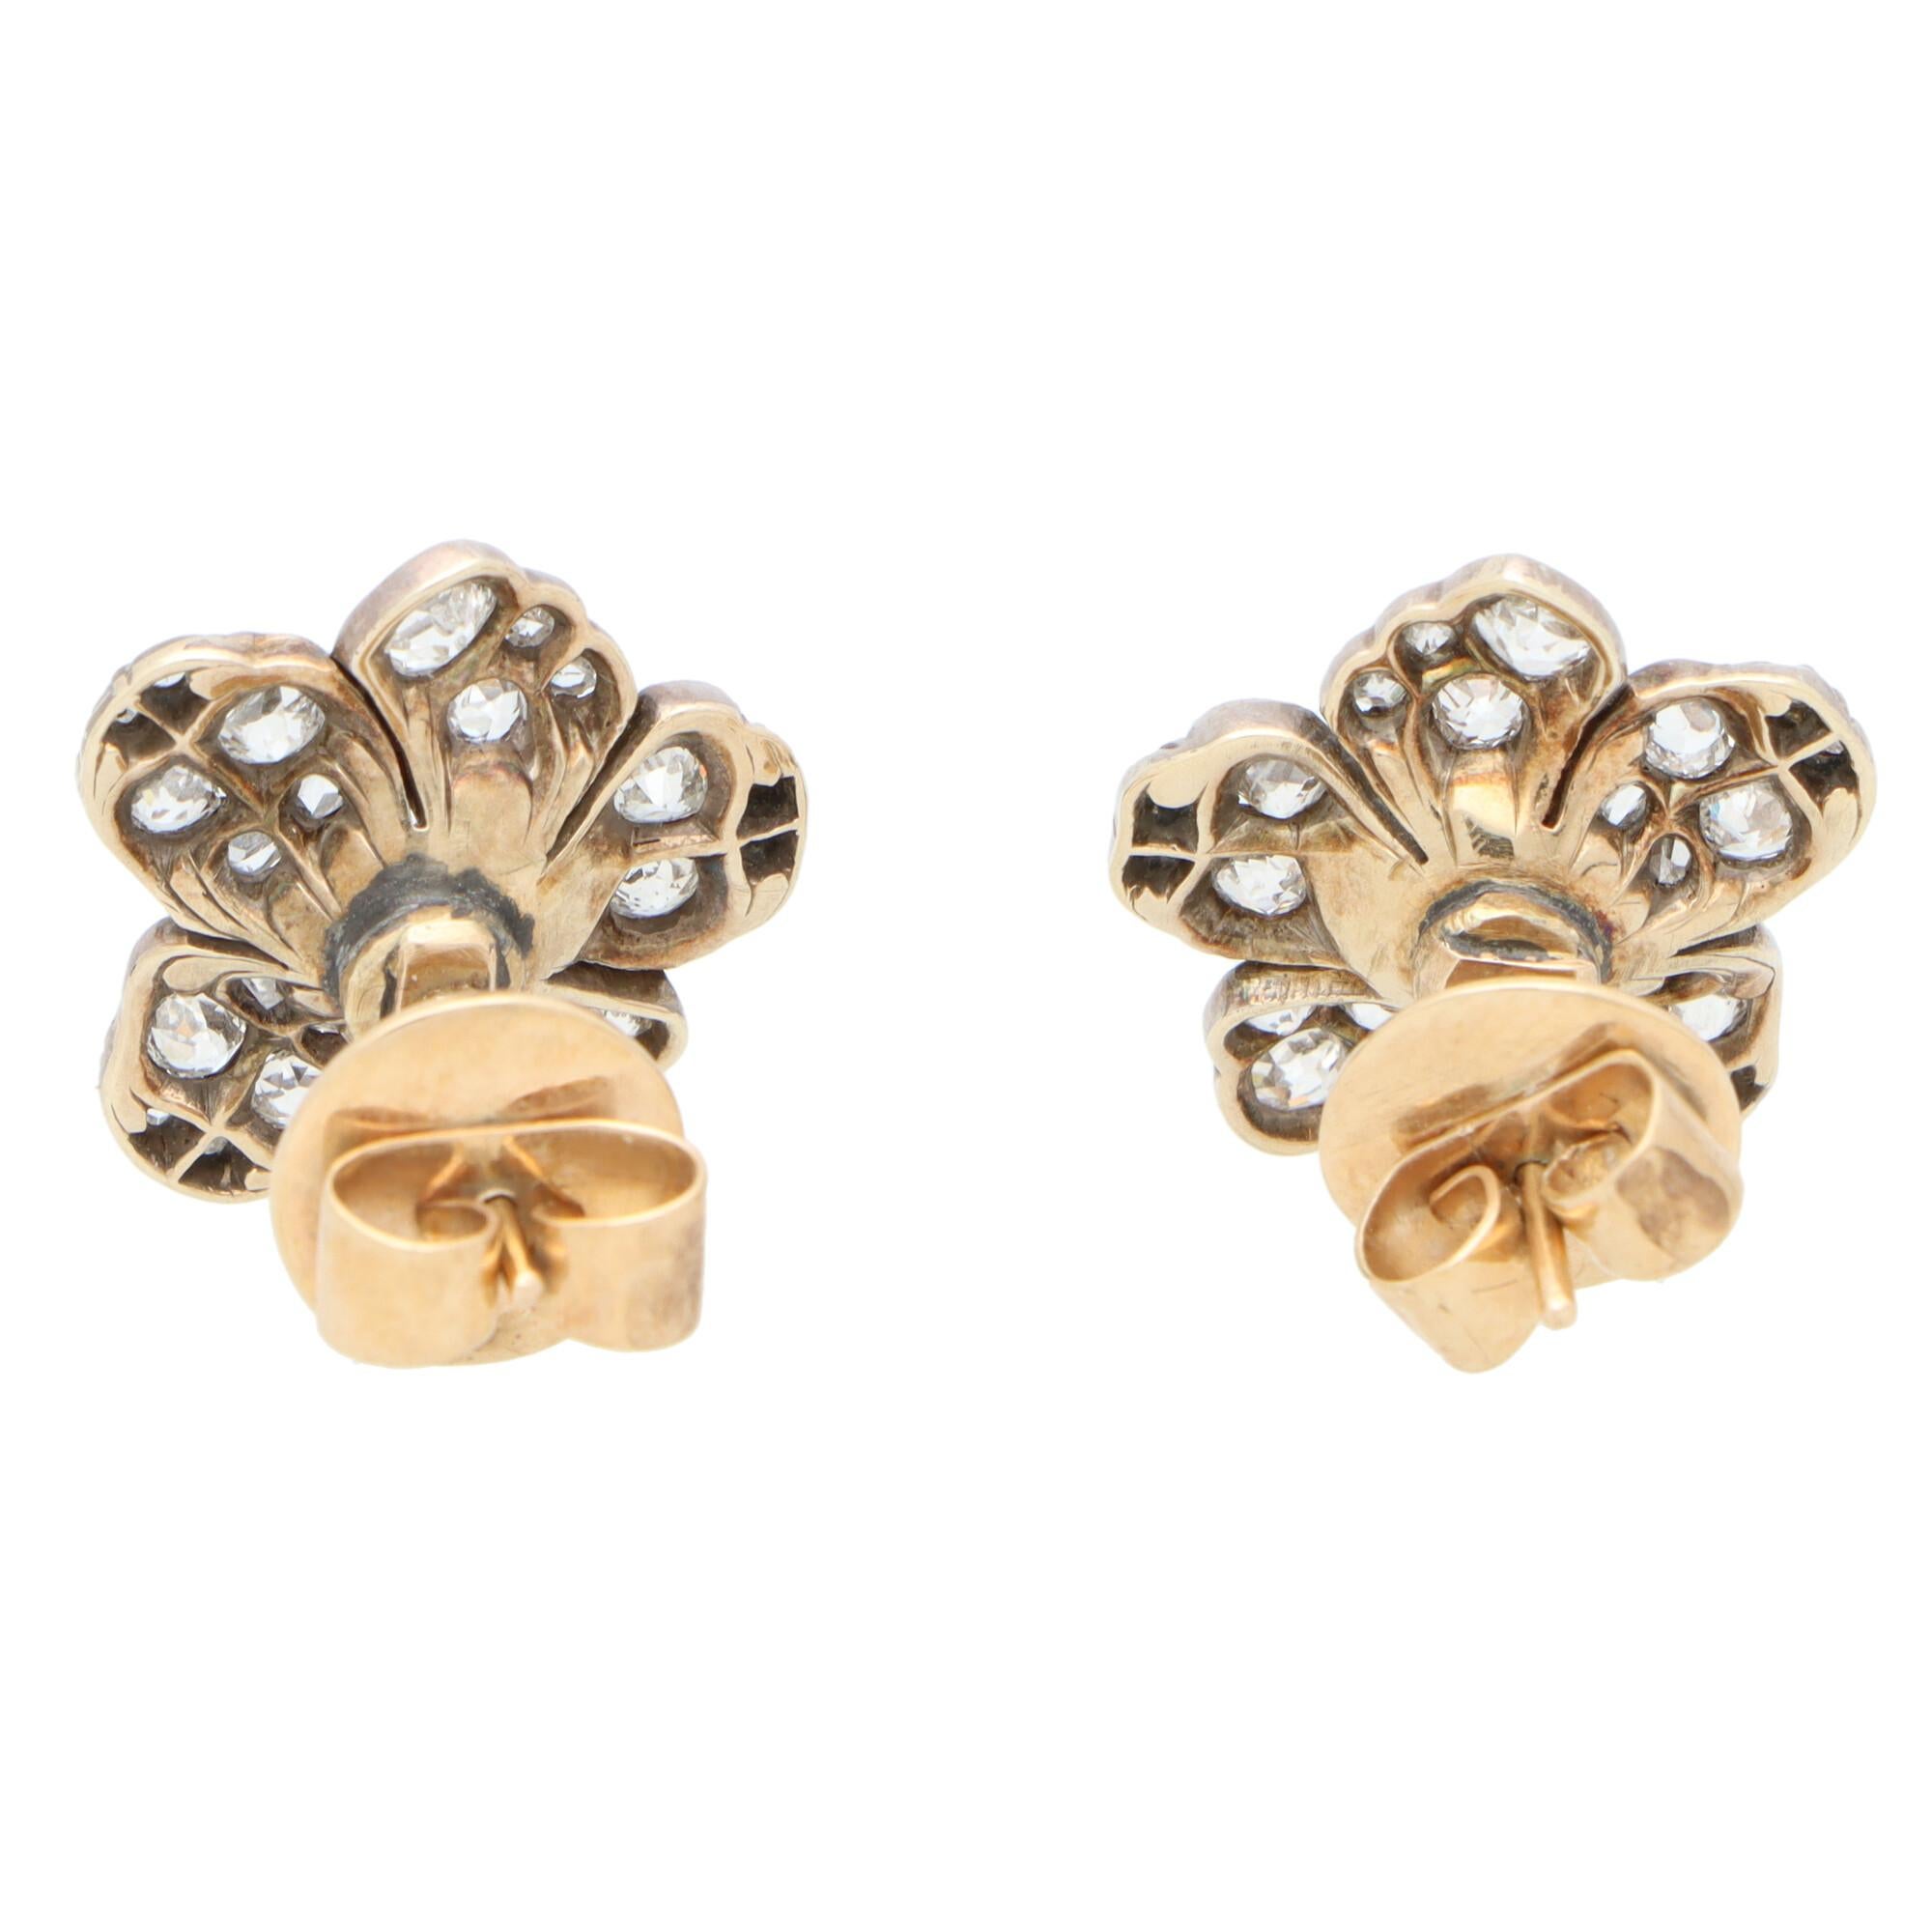 Women's or Men's Victorian Old Mine Cut Diamond Flower Cluster Earrings Set in Silver on Gold